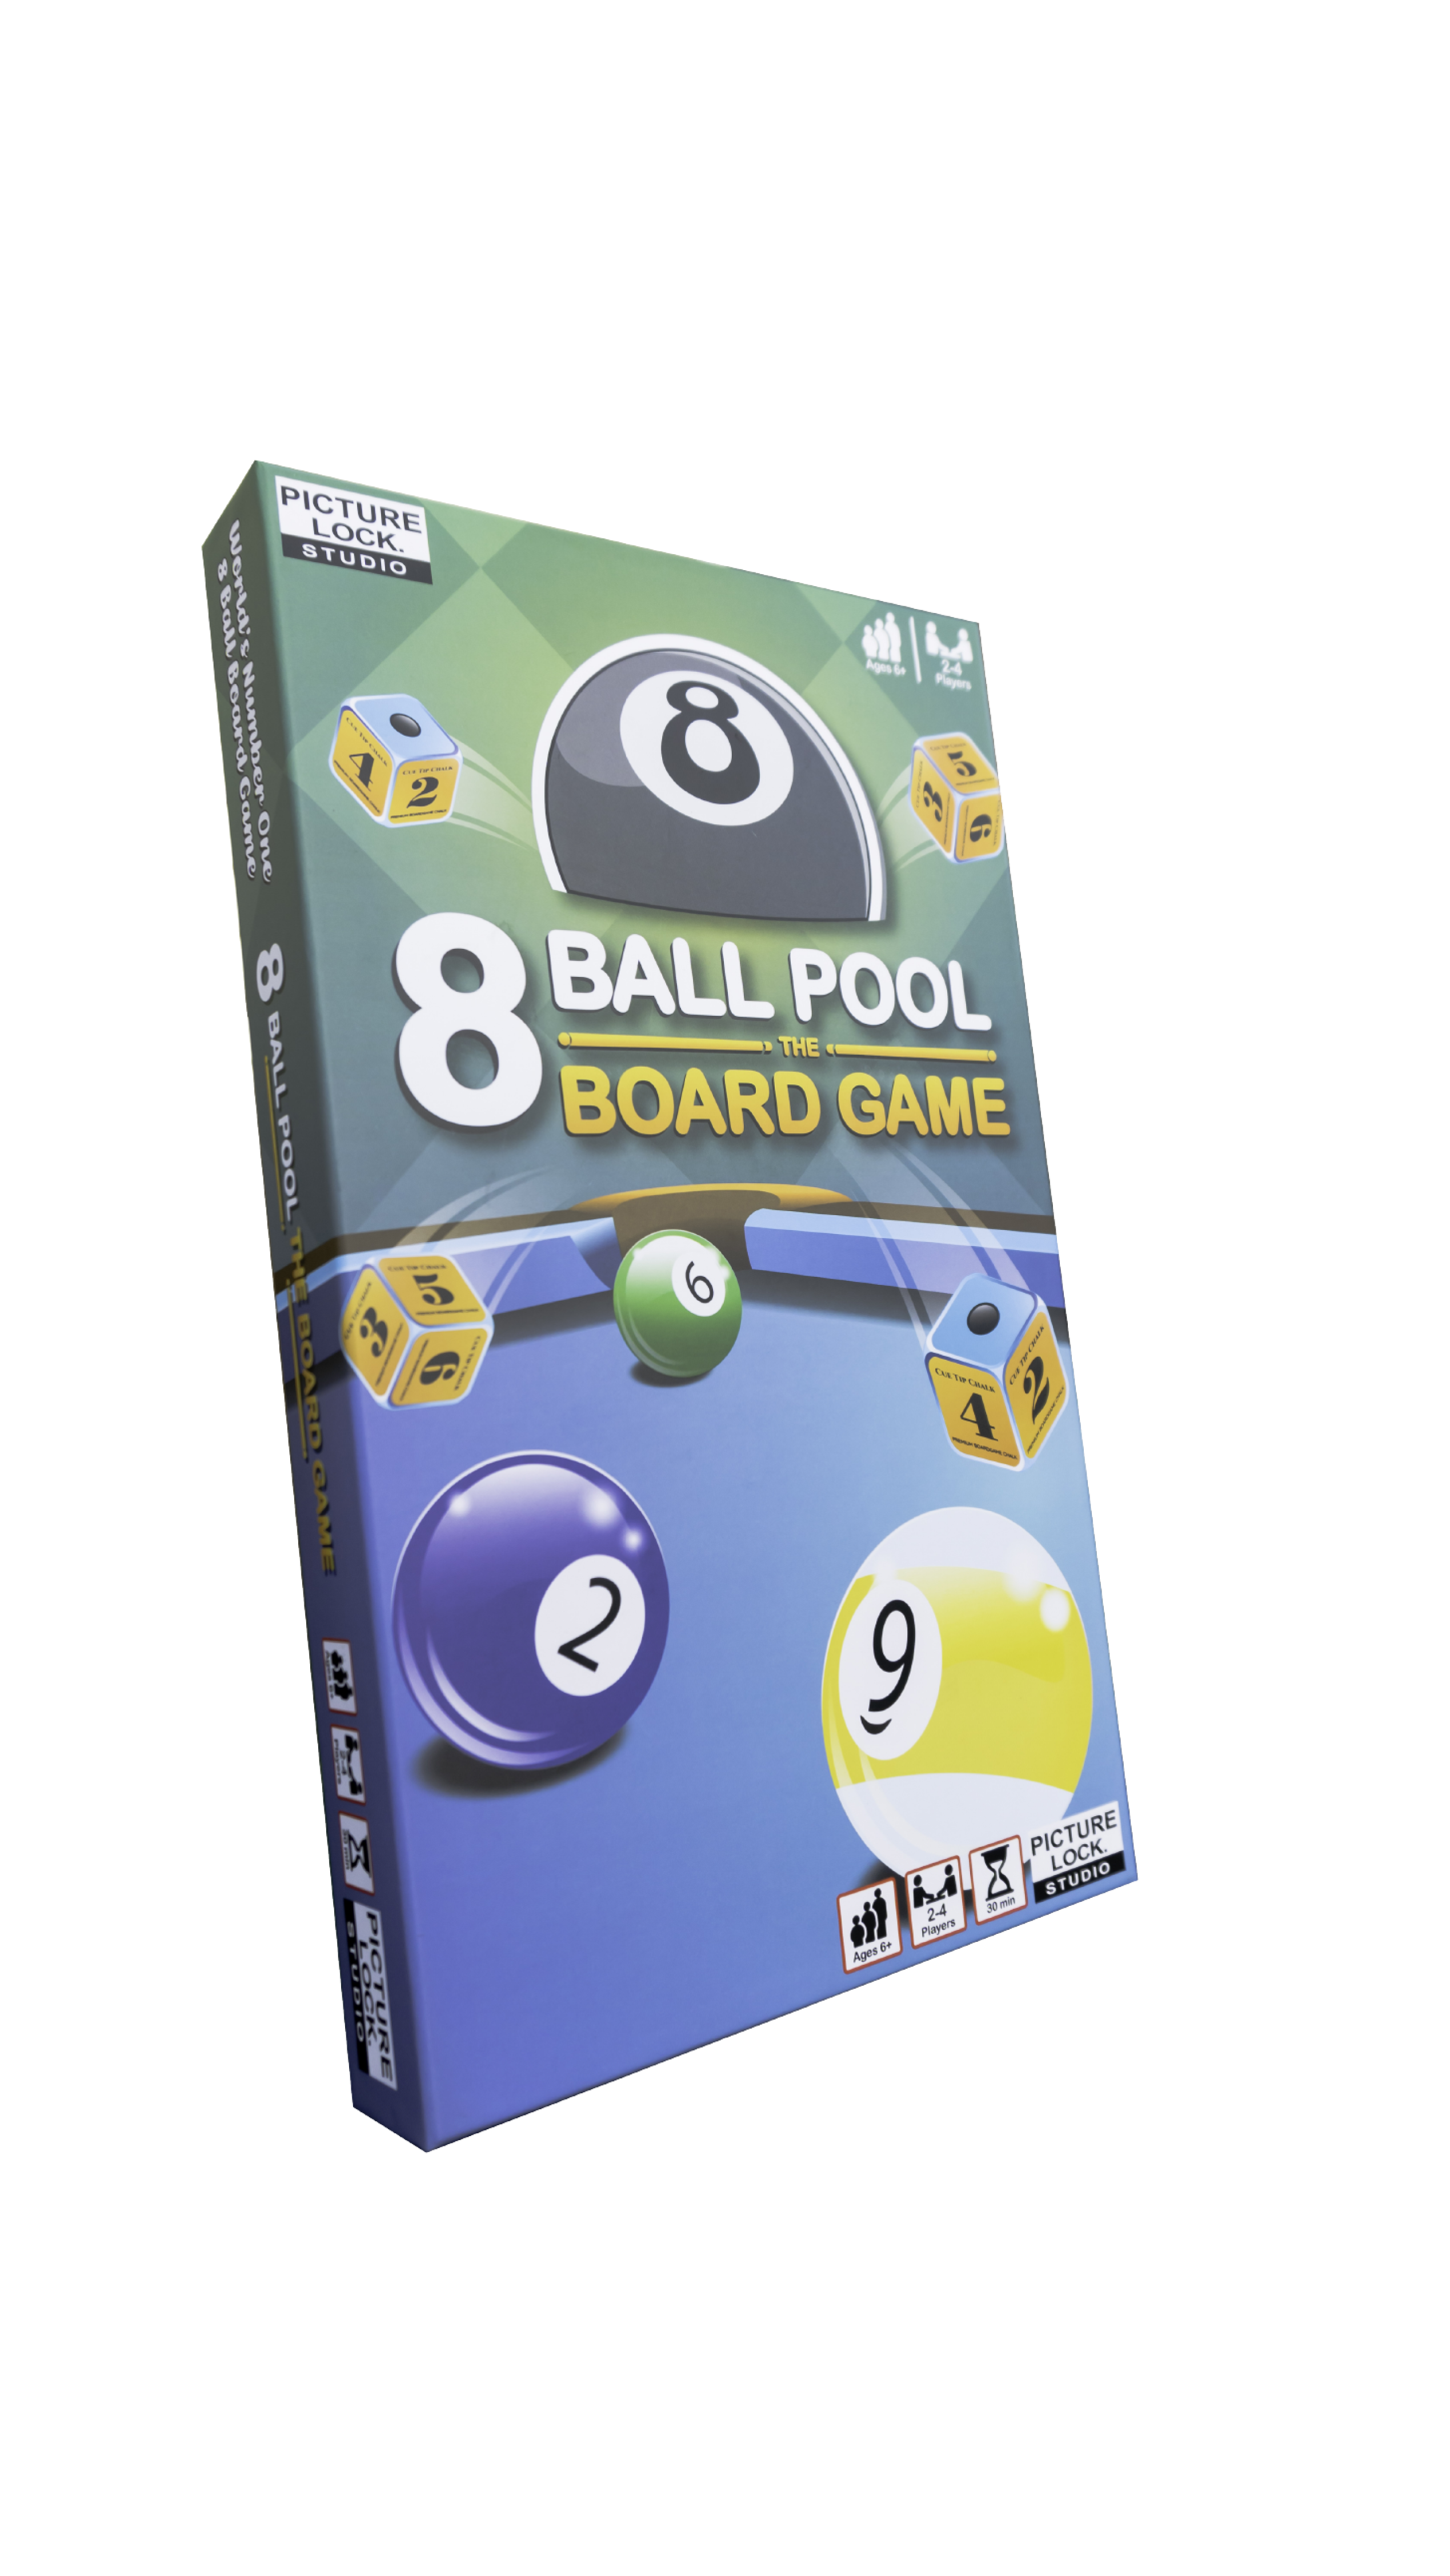 8 Ball Pool The Board Game